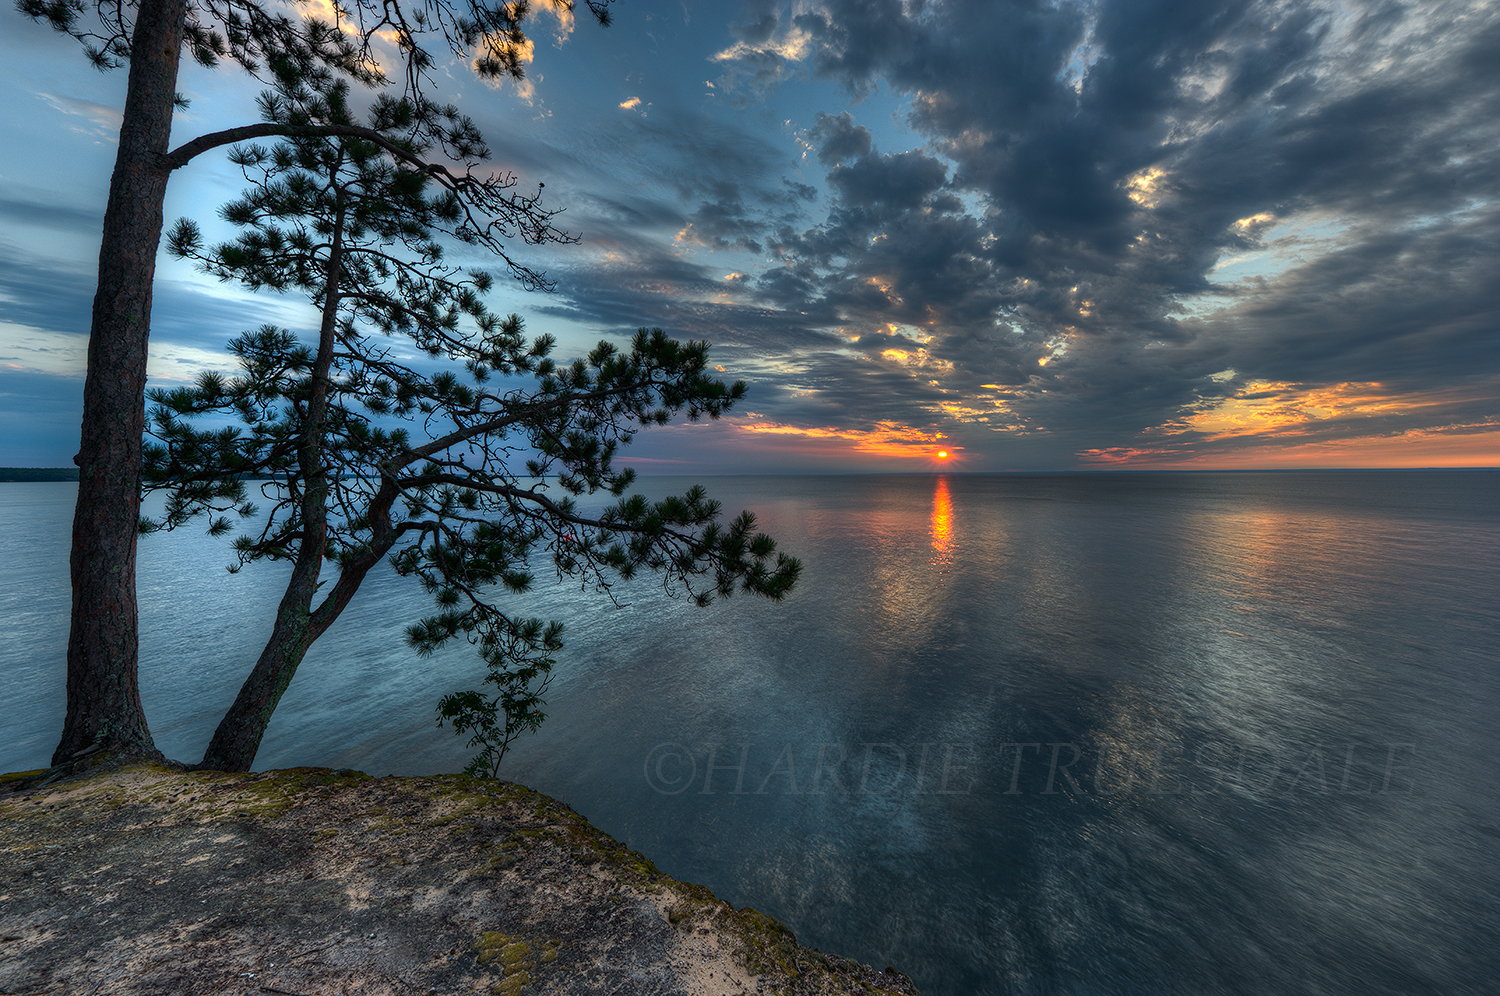  WI#033 "Sunset,&nbsp;Mawikwe Bay, Apostle Islands, South Shore, Lake Superior"  